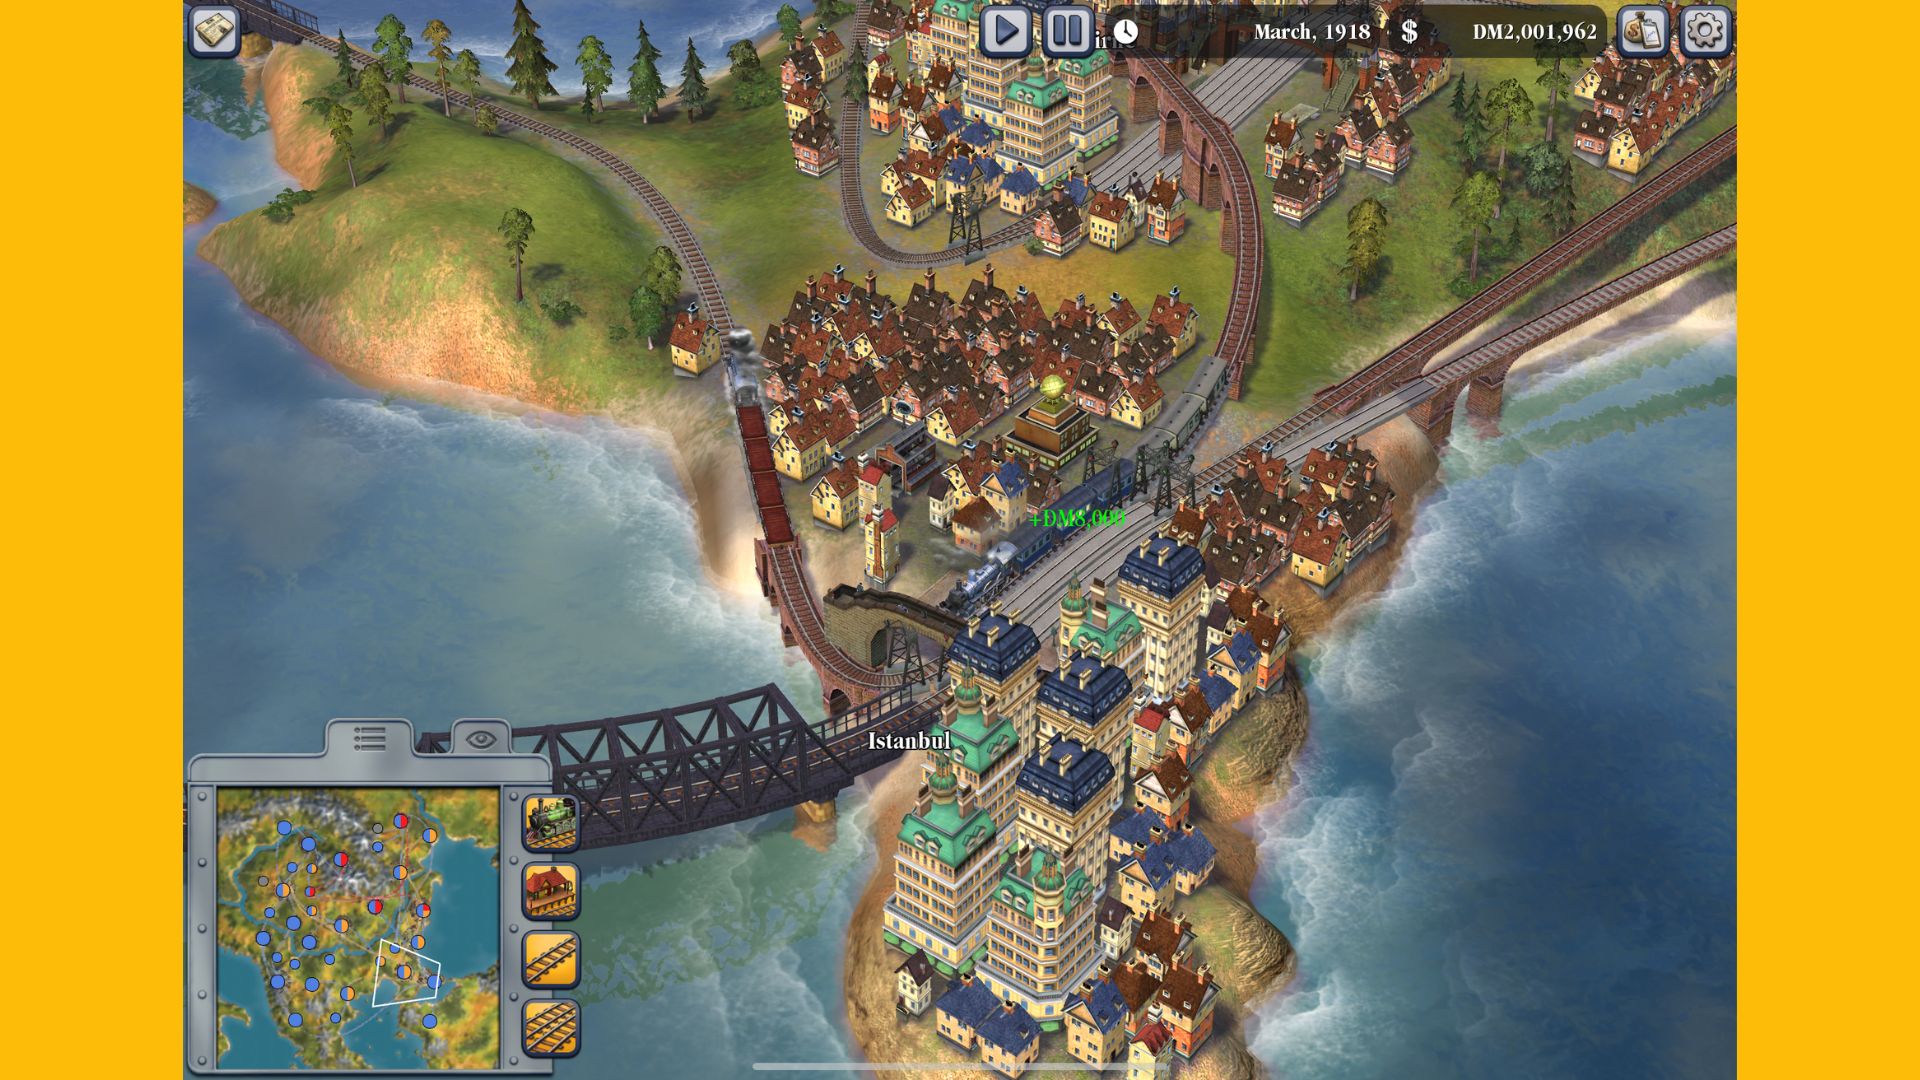 Recenzja Sid Meier's Railroads na urządzenia mobilne — zrzut ekranu przedstawiający różne tory kolejowe przelatujące nad sobą w pajęczej sieci na zielonych równinach między miniaturowymi miasteczkami.